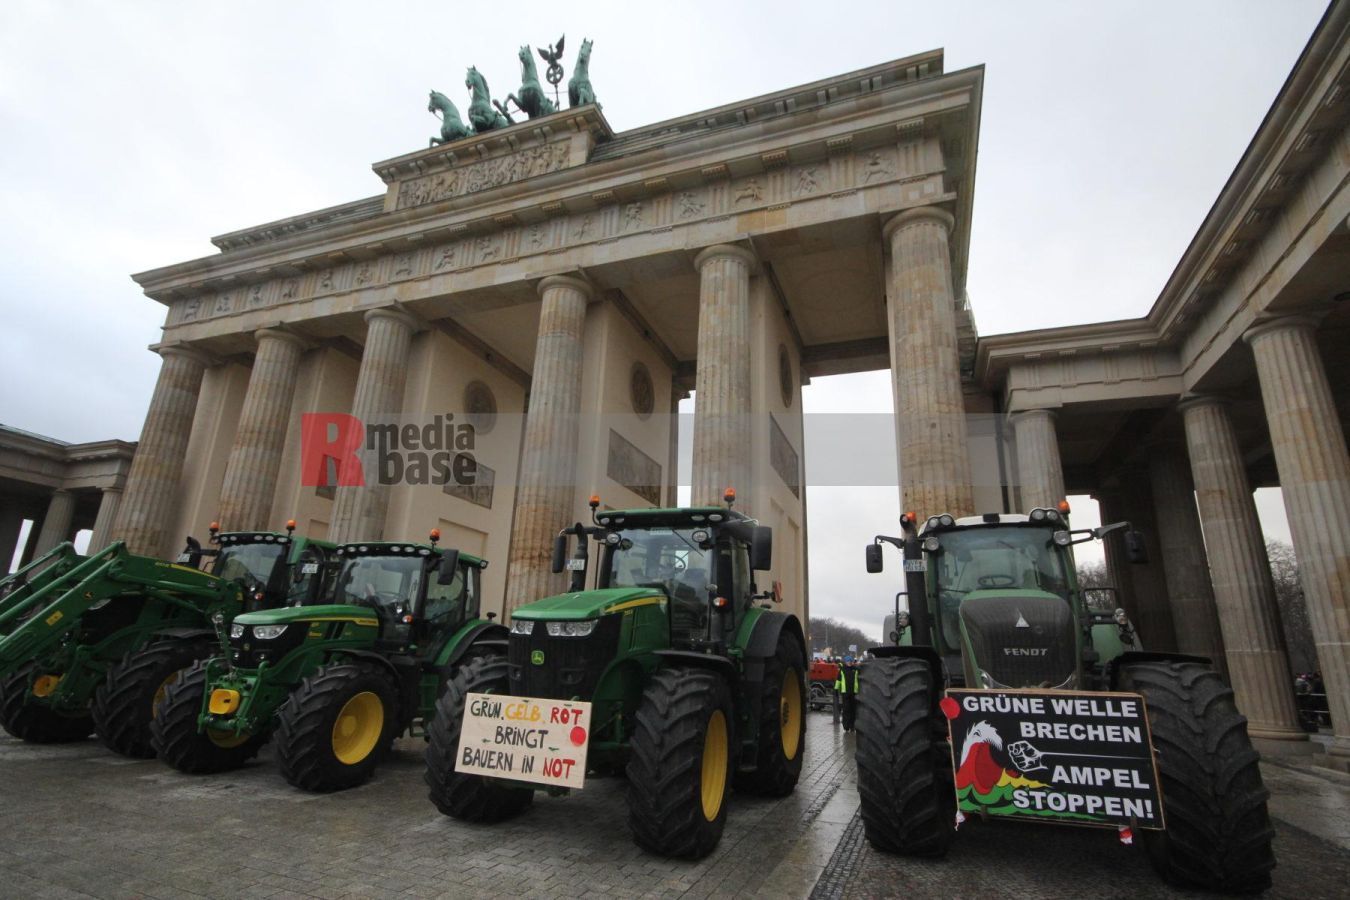 Bauernprotest in Berlin <i>Bild Denner/R-mediabase</i> <br><a href=/confor2/?bld=79029&pst=78995&aid=86&i1=Denner/R-mediabase>Download Bild 79029</a>  <br><a href=/?p=78995>Zum Beitrag 78995</a>